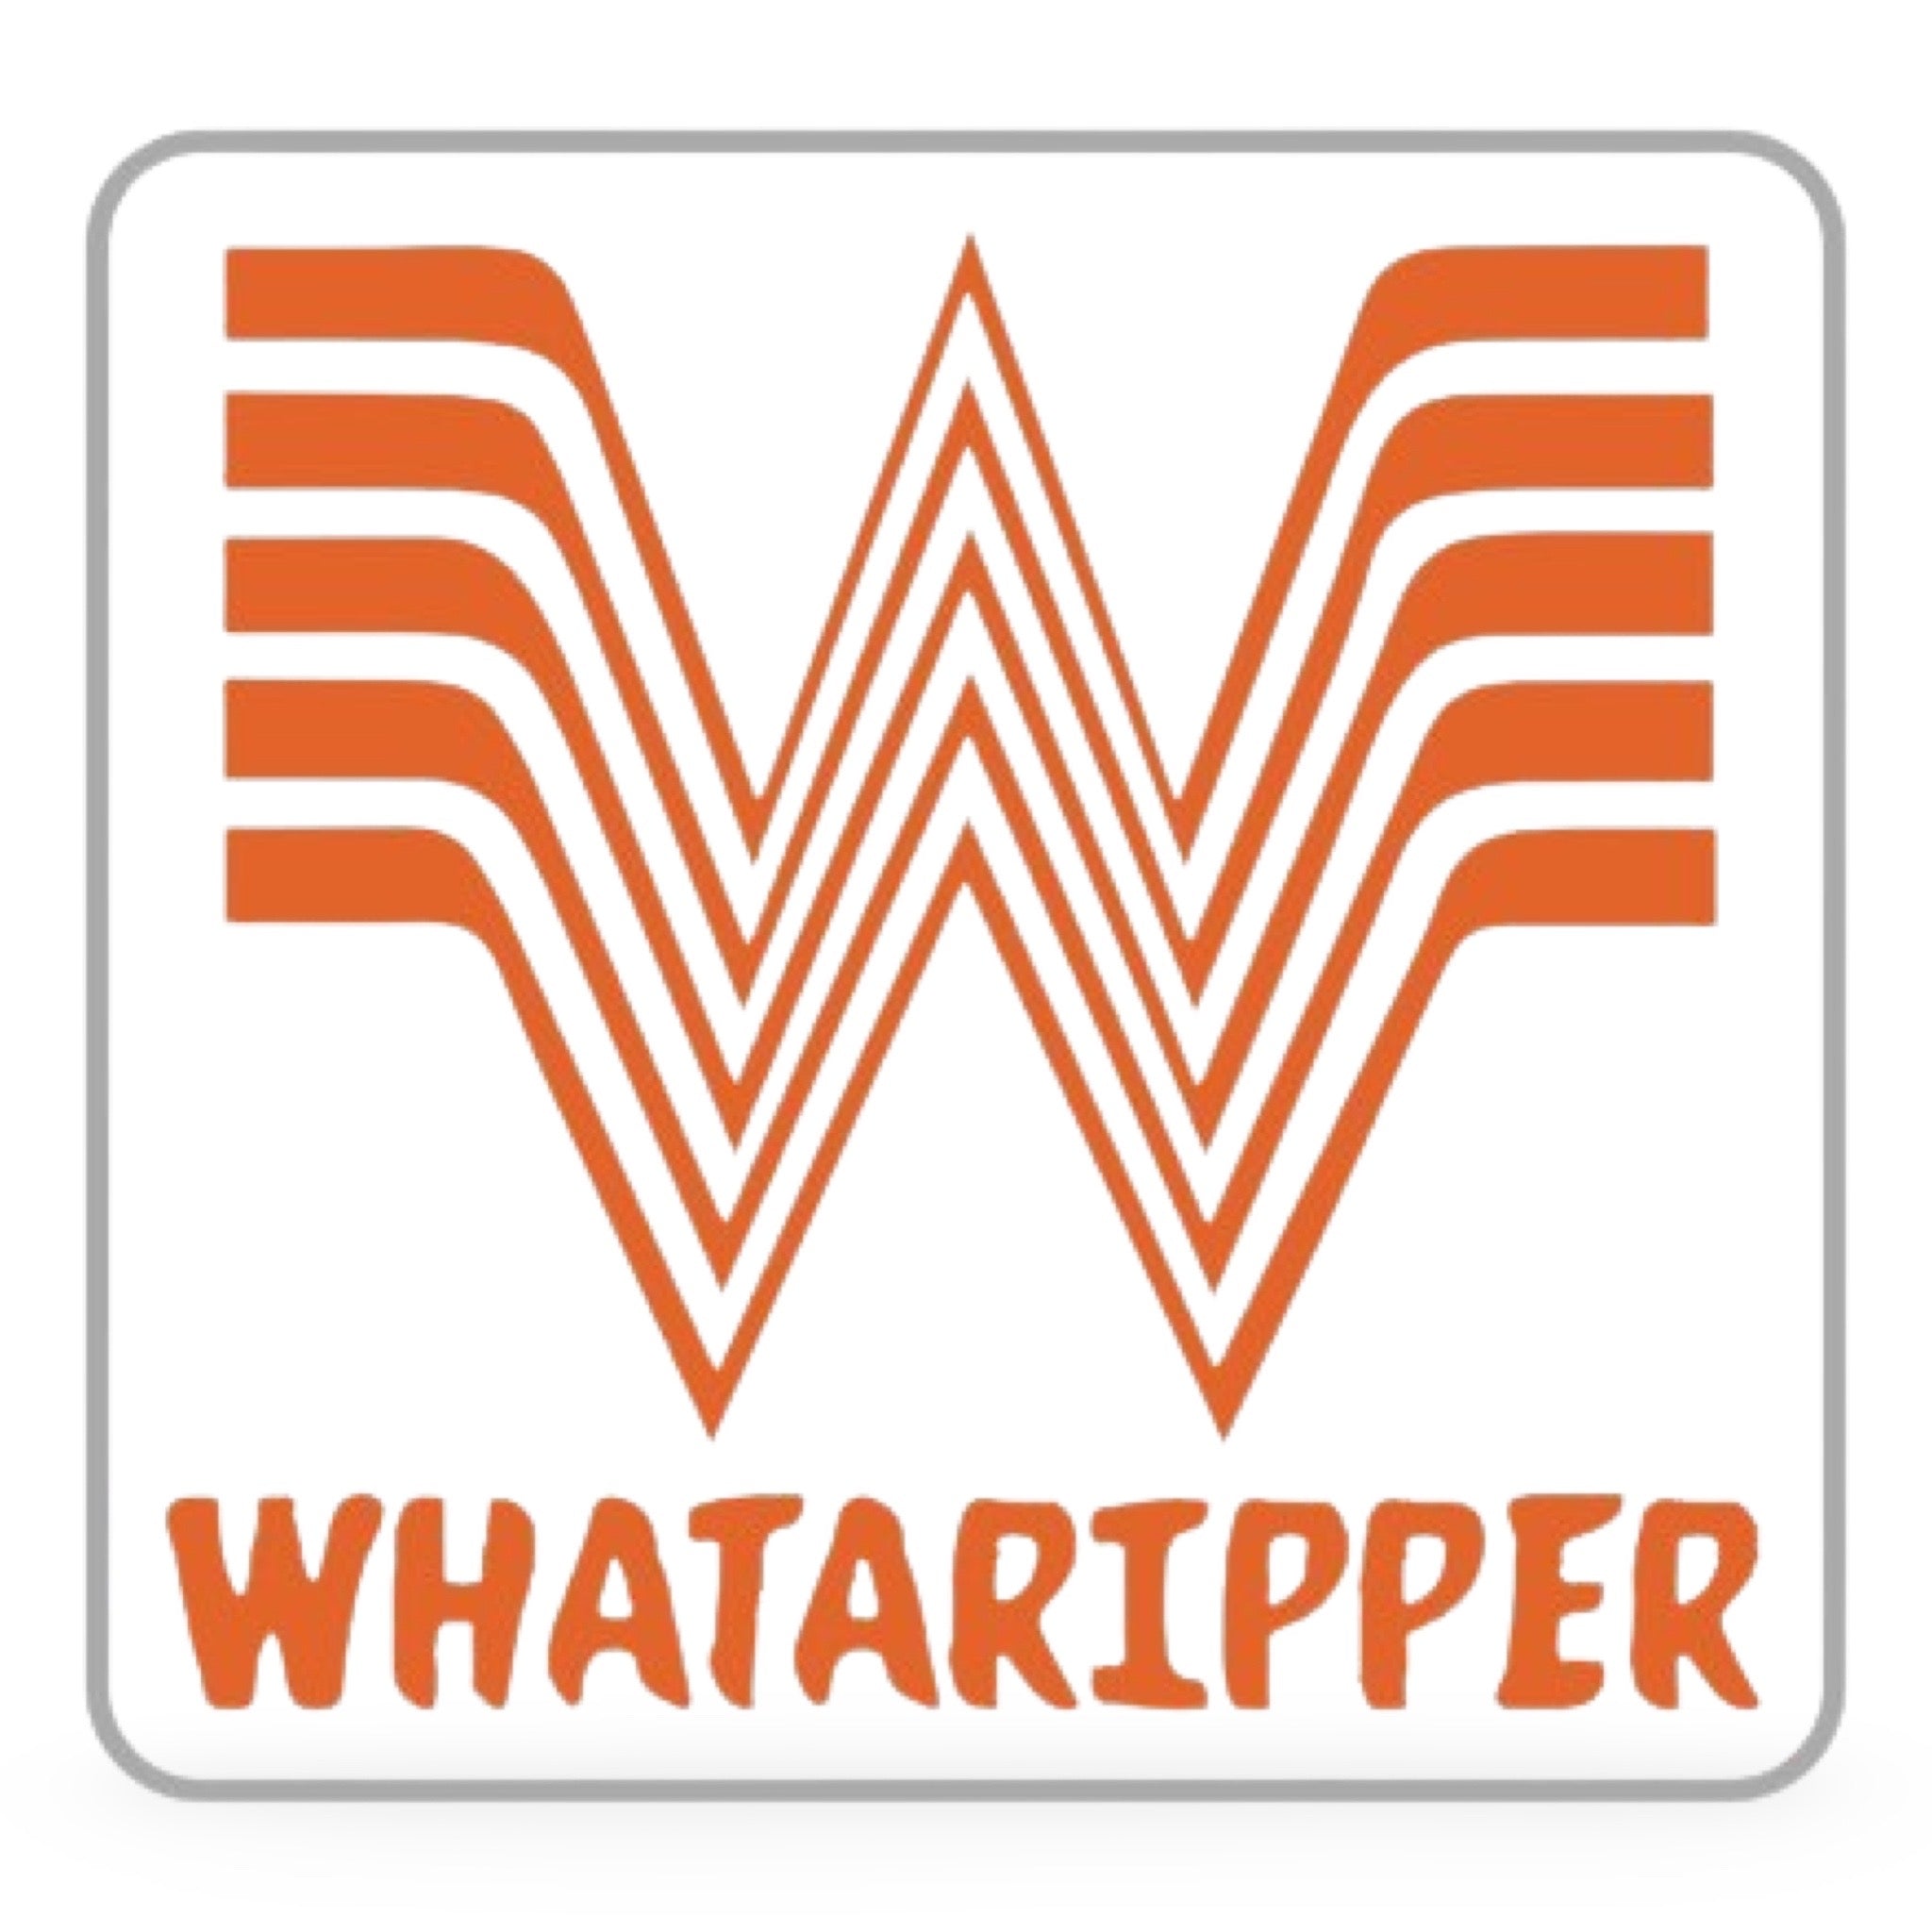 Whataripper Sticker